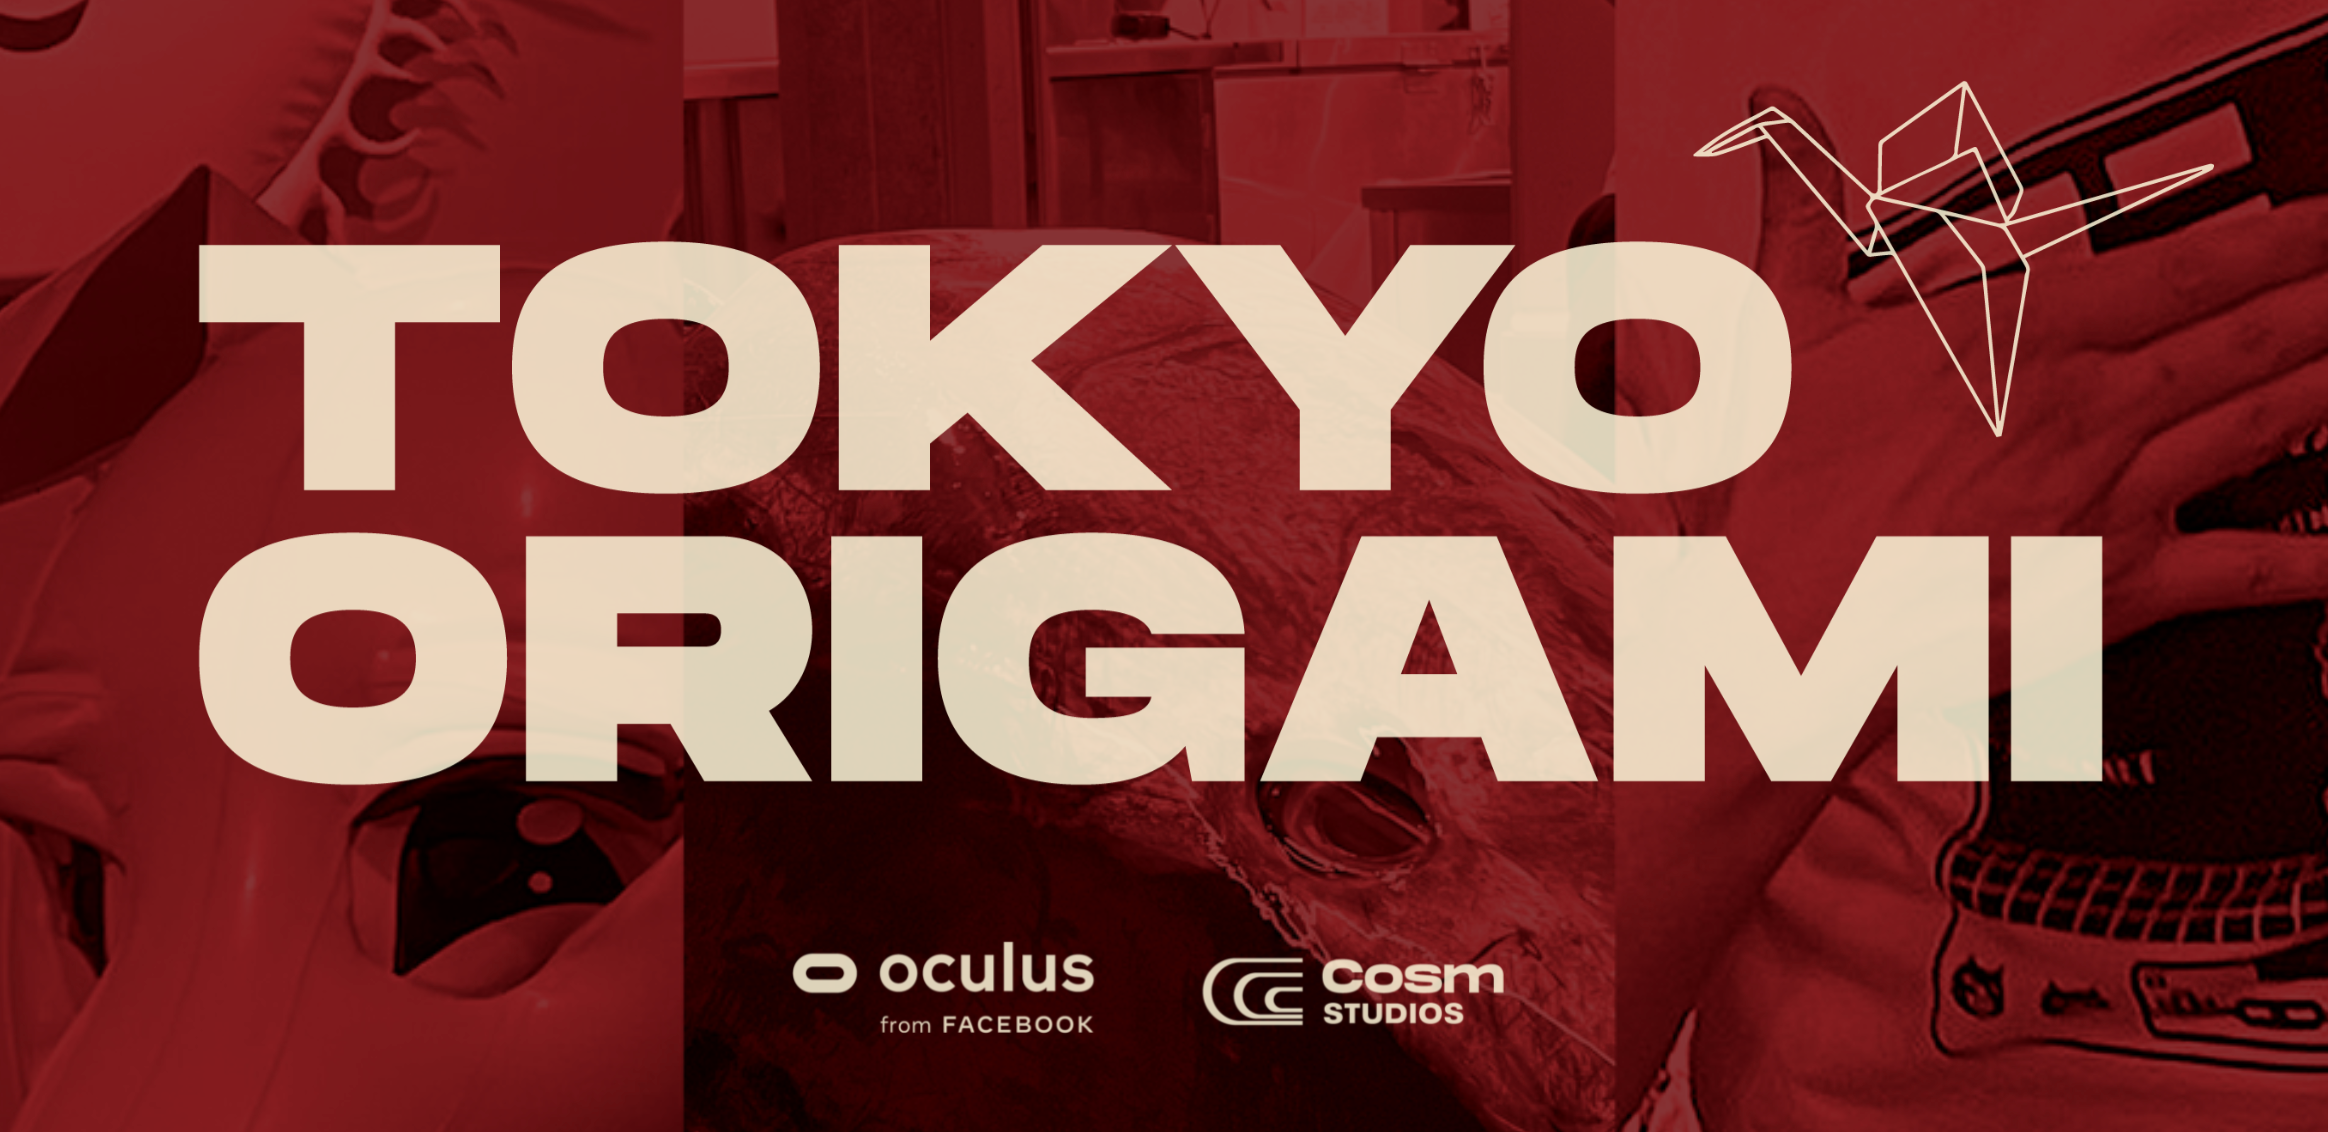 記事「インフォバーングループCEO・今田素子が東京をテーマにしたVR作品「TOKYO ORIGAMI」に出演」のメインアイキャッチ画像